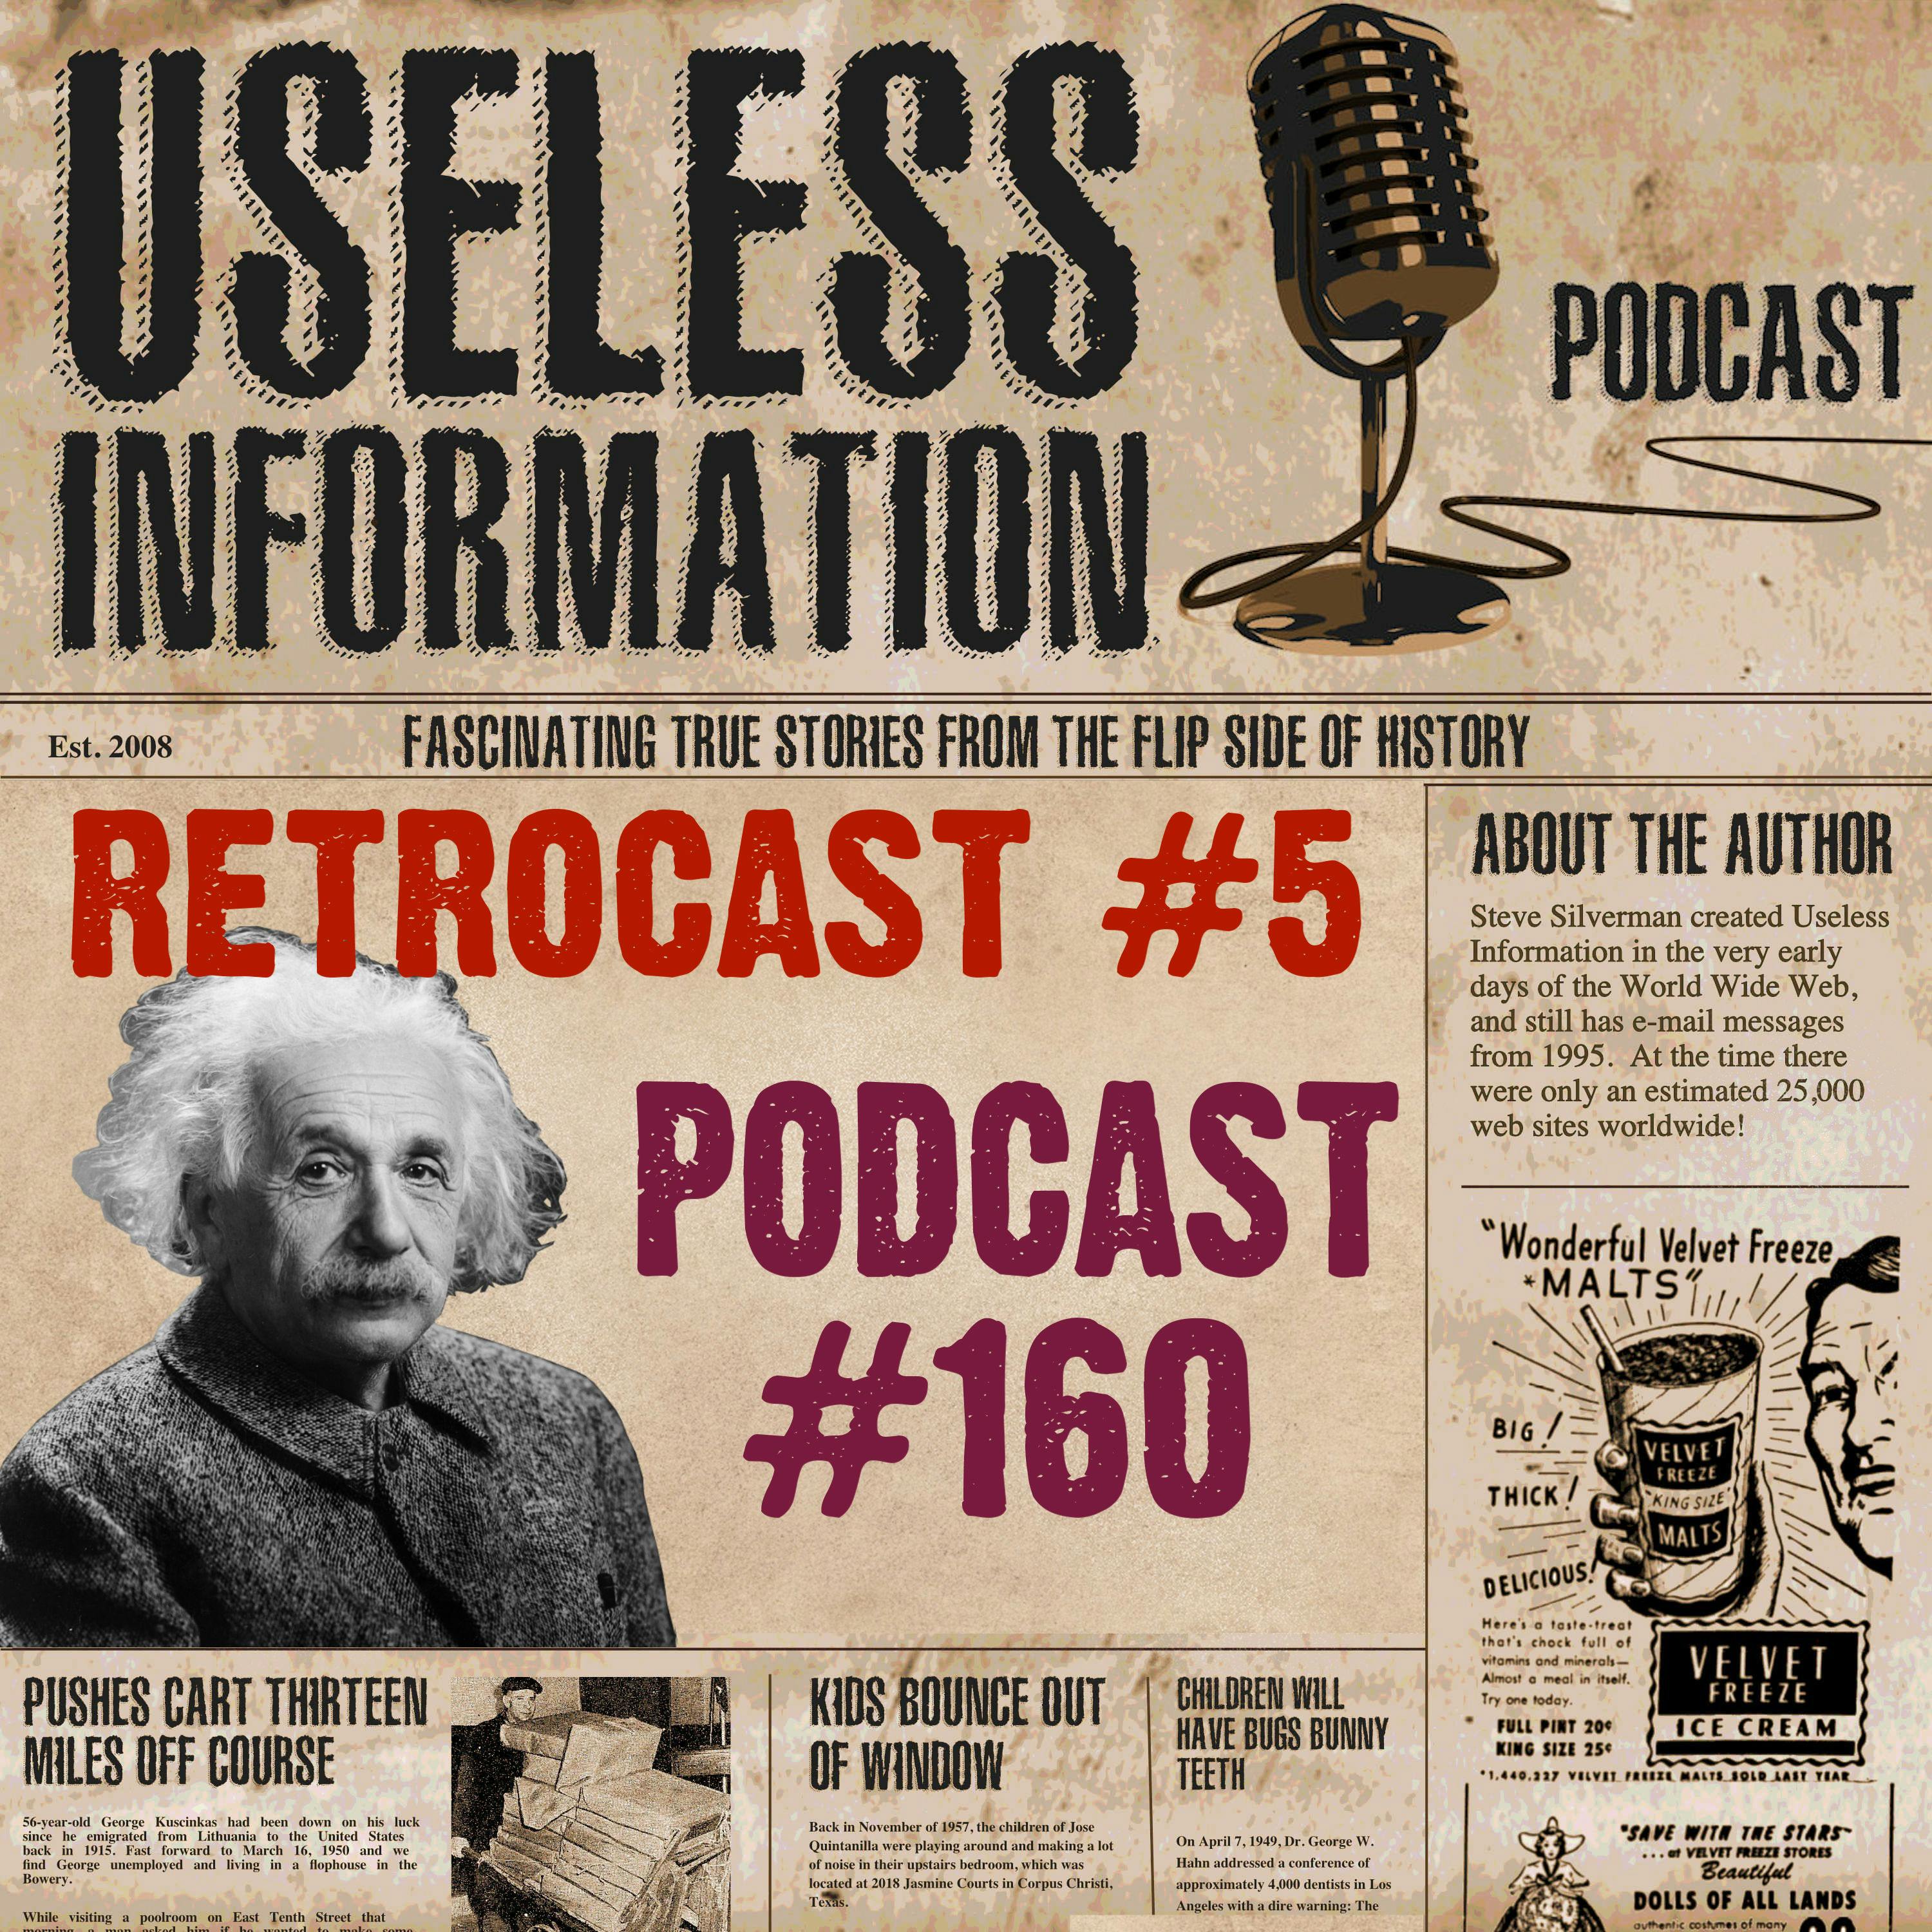 Retrocast #5 - UI Podcast #160